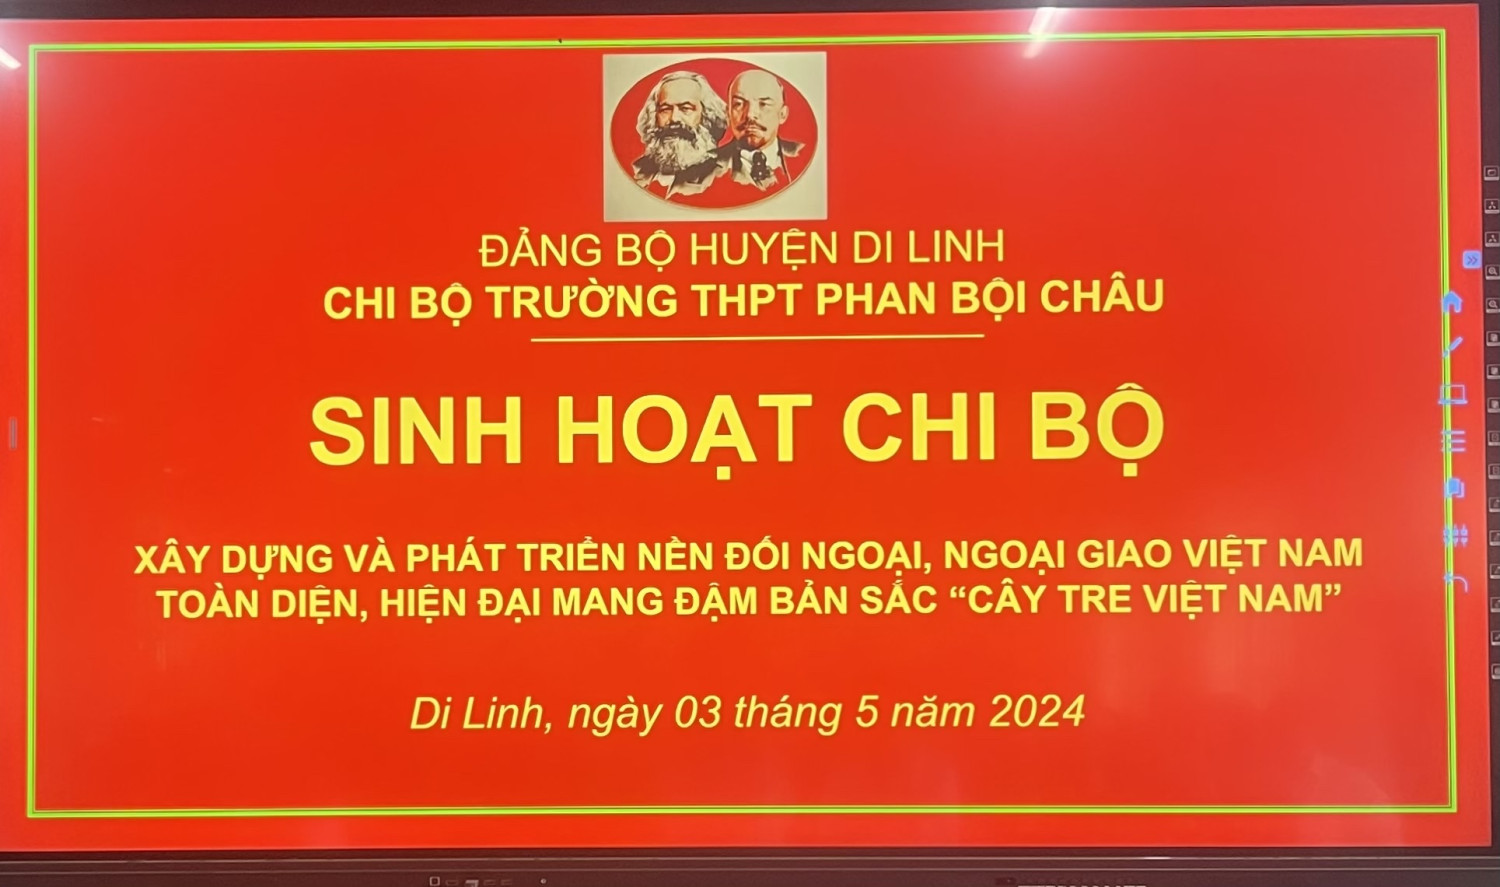 "Xây dựng và phát triển nền đối ngoại, ngoại giao Việt Nam"